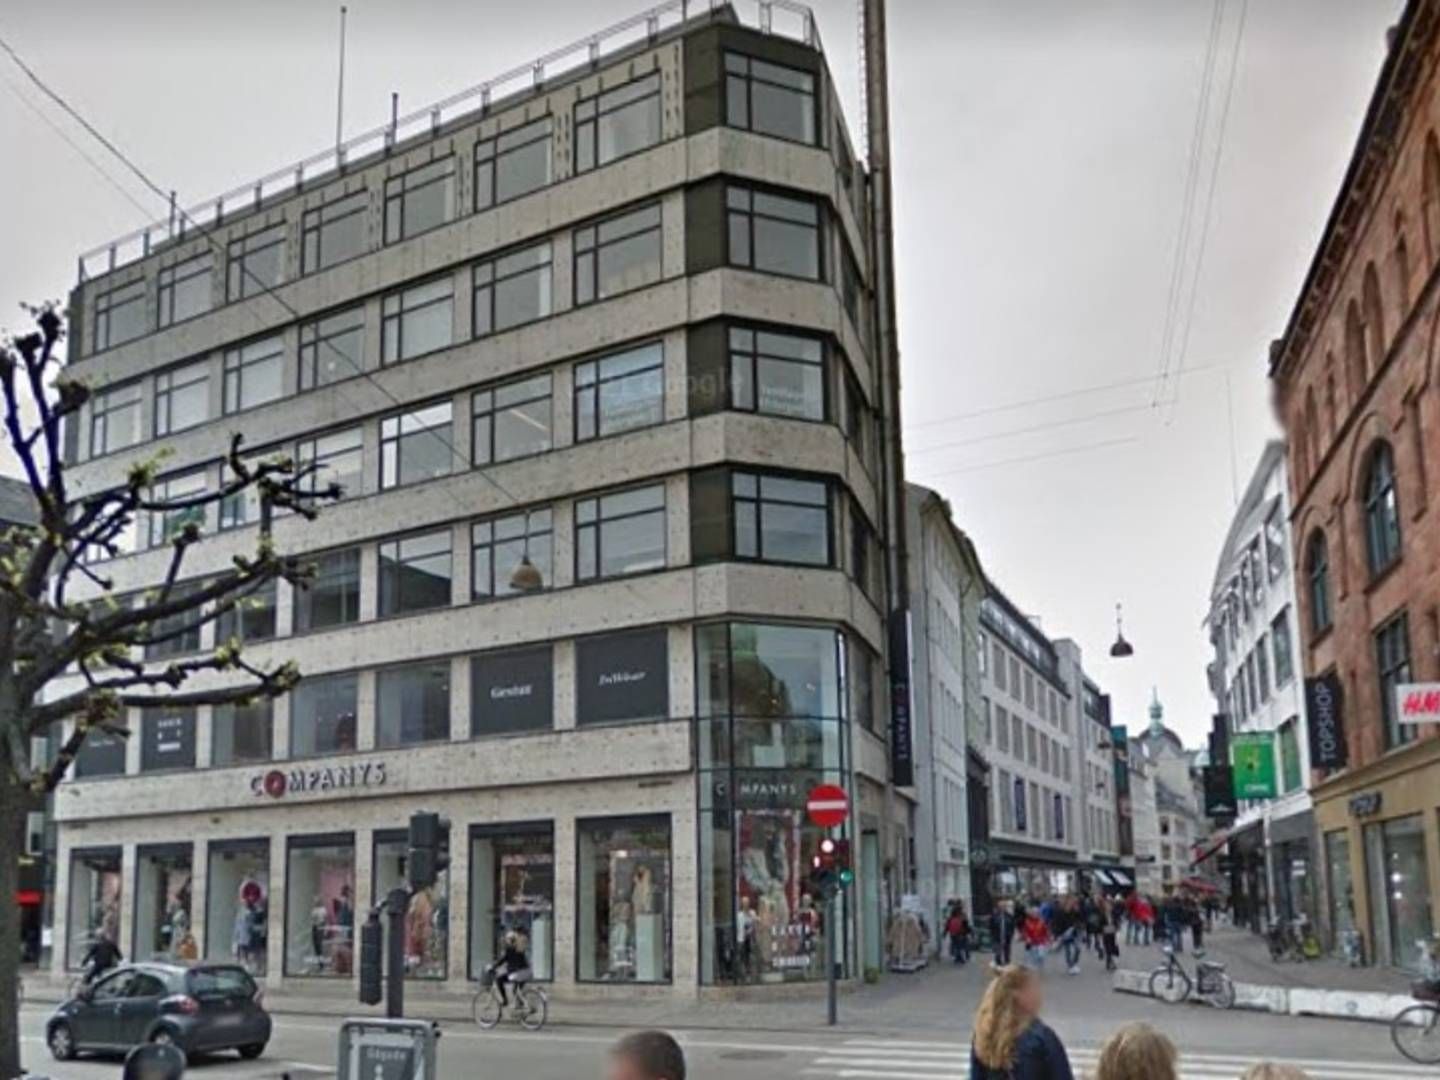 Aage Bangs Fonds største aktiv er ejendommen Østergade 27 på Strøget i København, der i seneste regnskab er opgjort til 163 mio. kr. Formandens søn står i spidsen for et stort renoverings- og forbedringsprojekt af ejendommen. | Foto: Google Street View